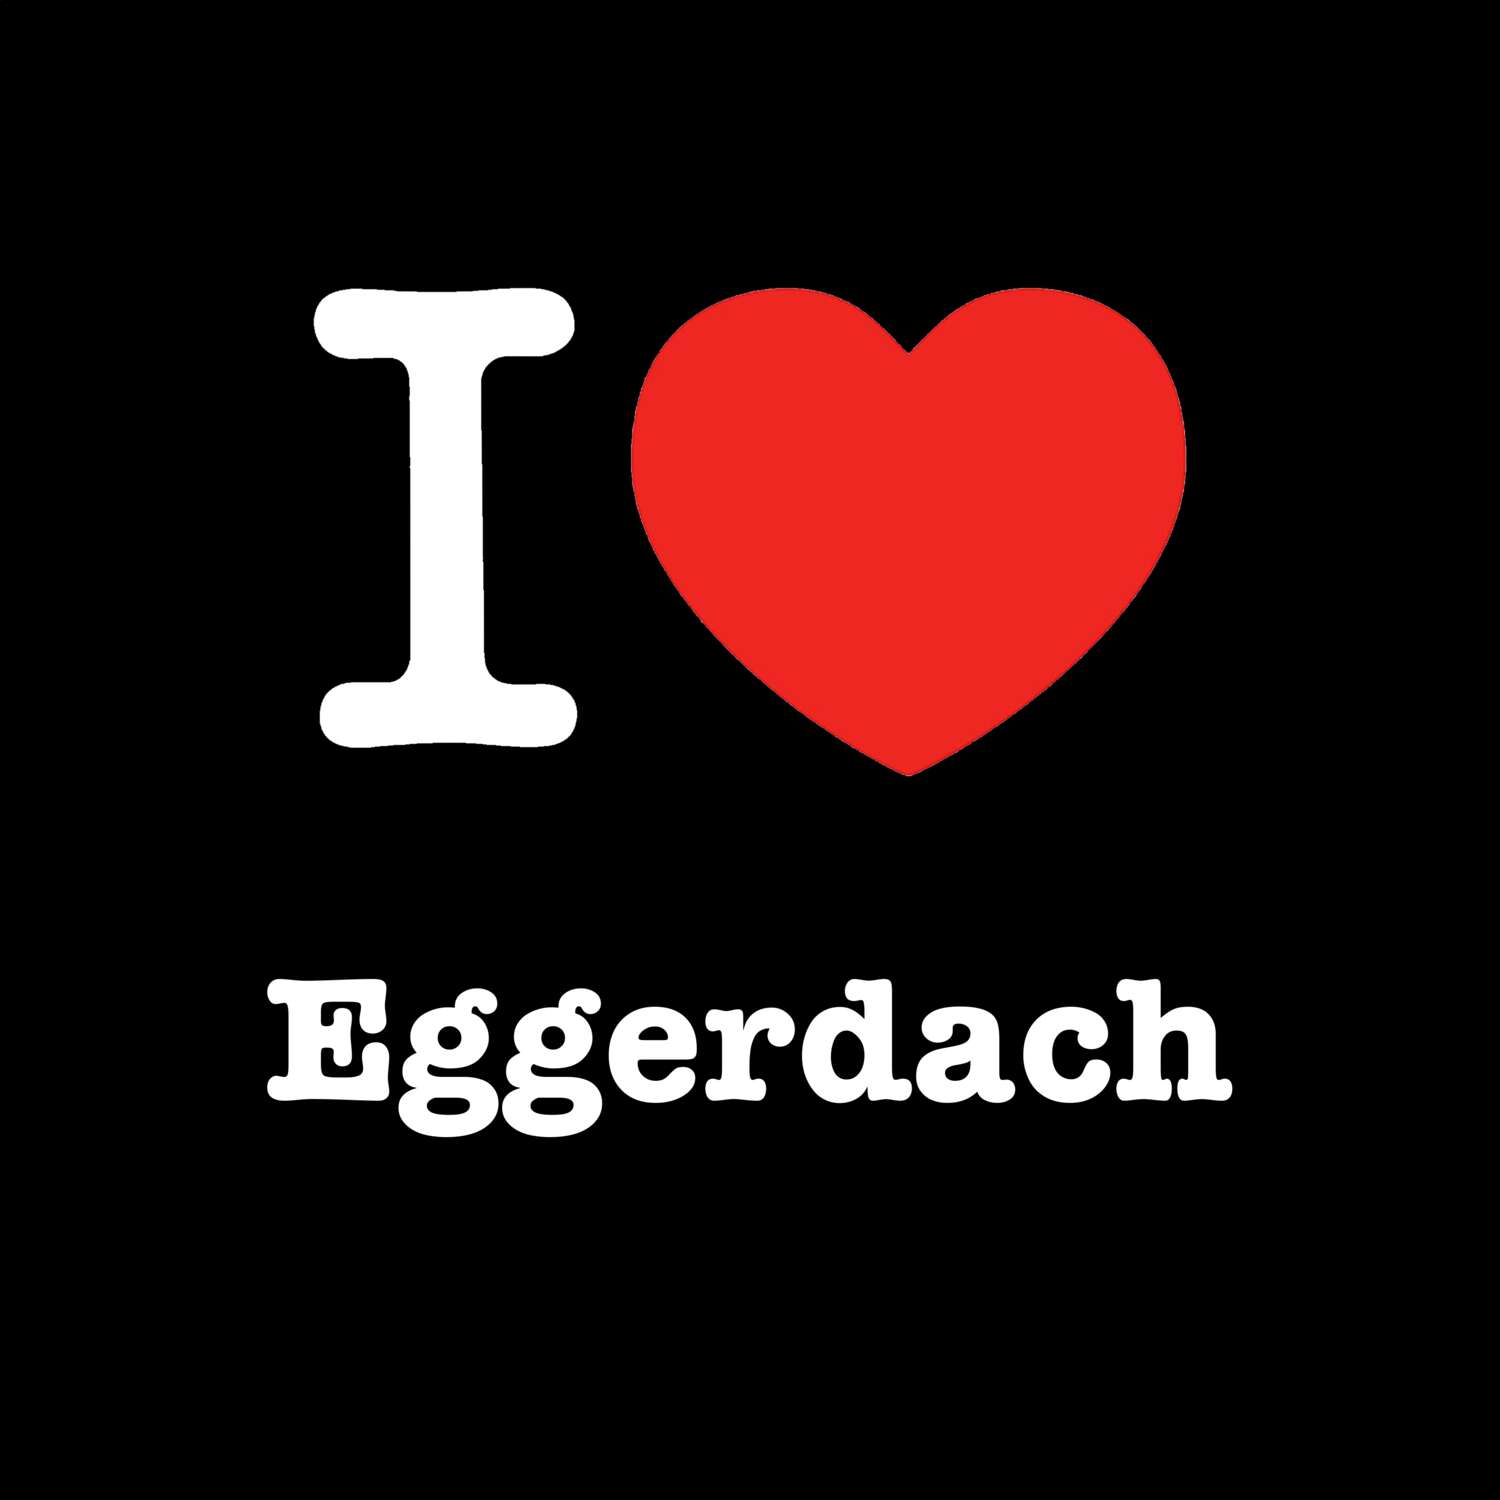 Eggerdach T-Shirt »I love«